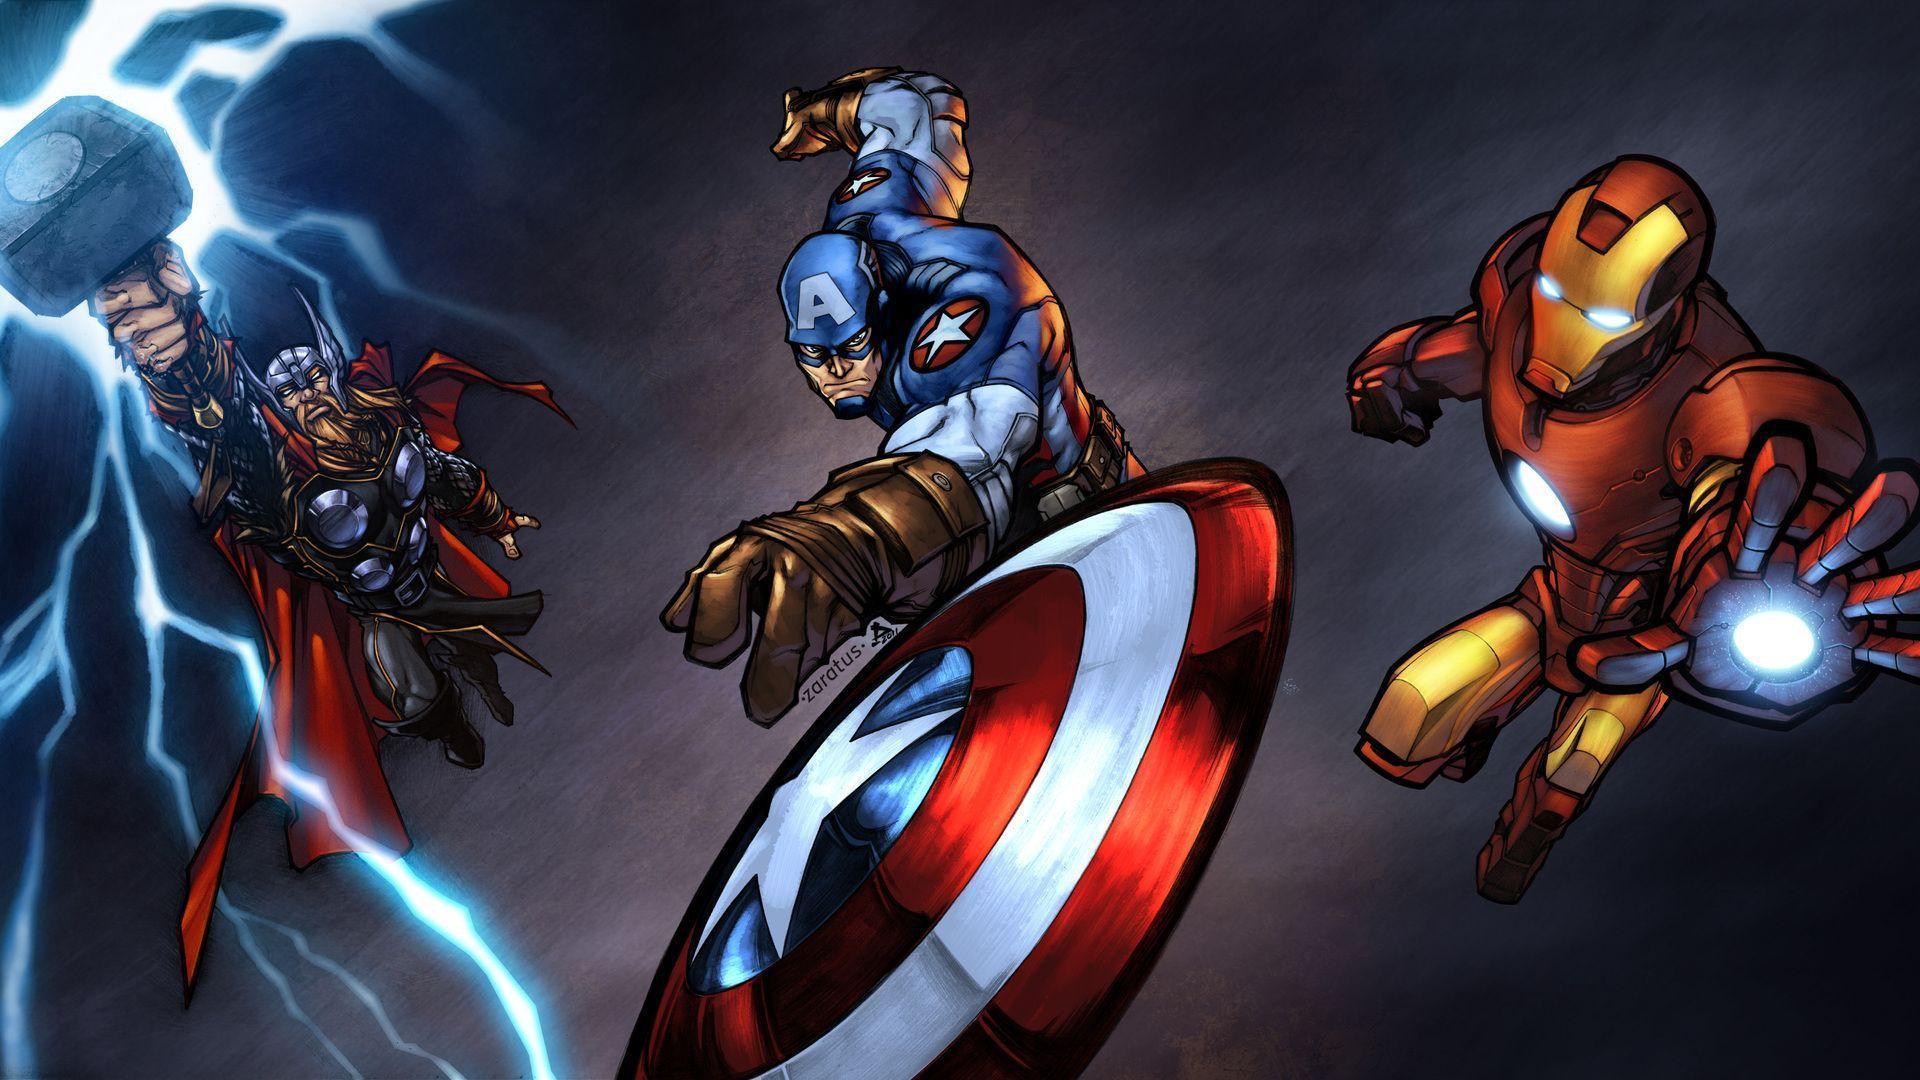 Thor avengers HD. avengers wallpaper, the avengers, captain